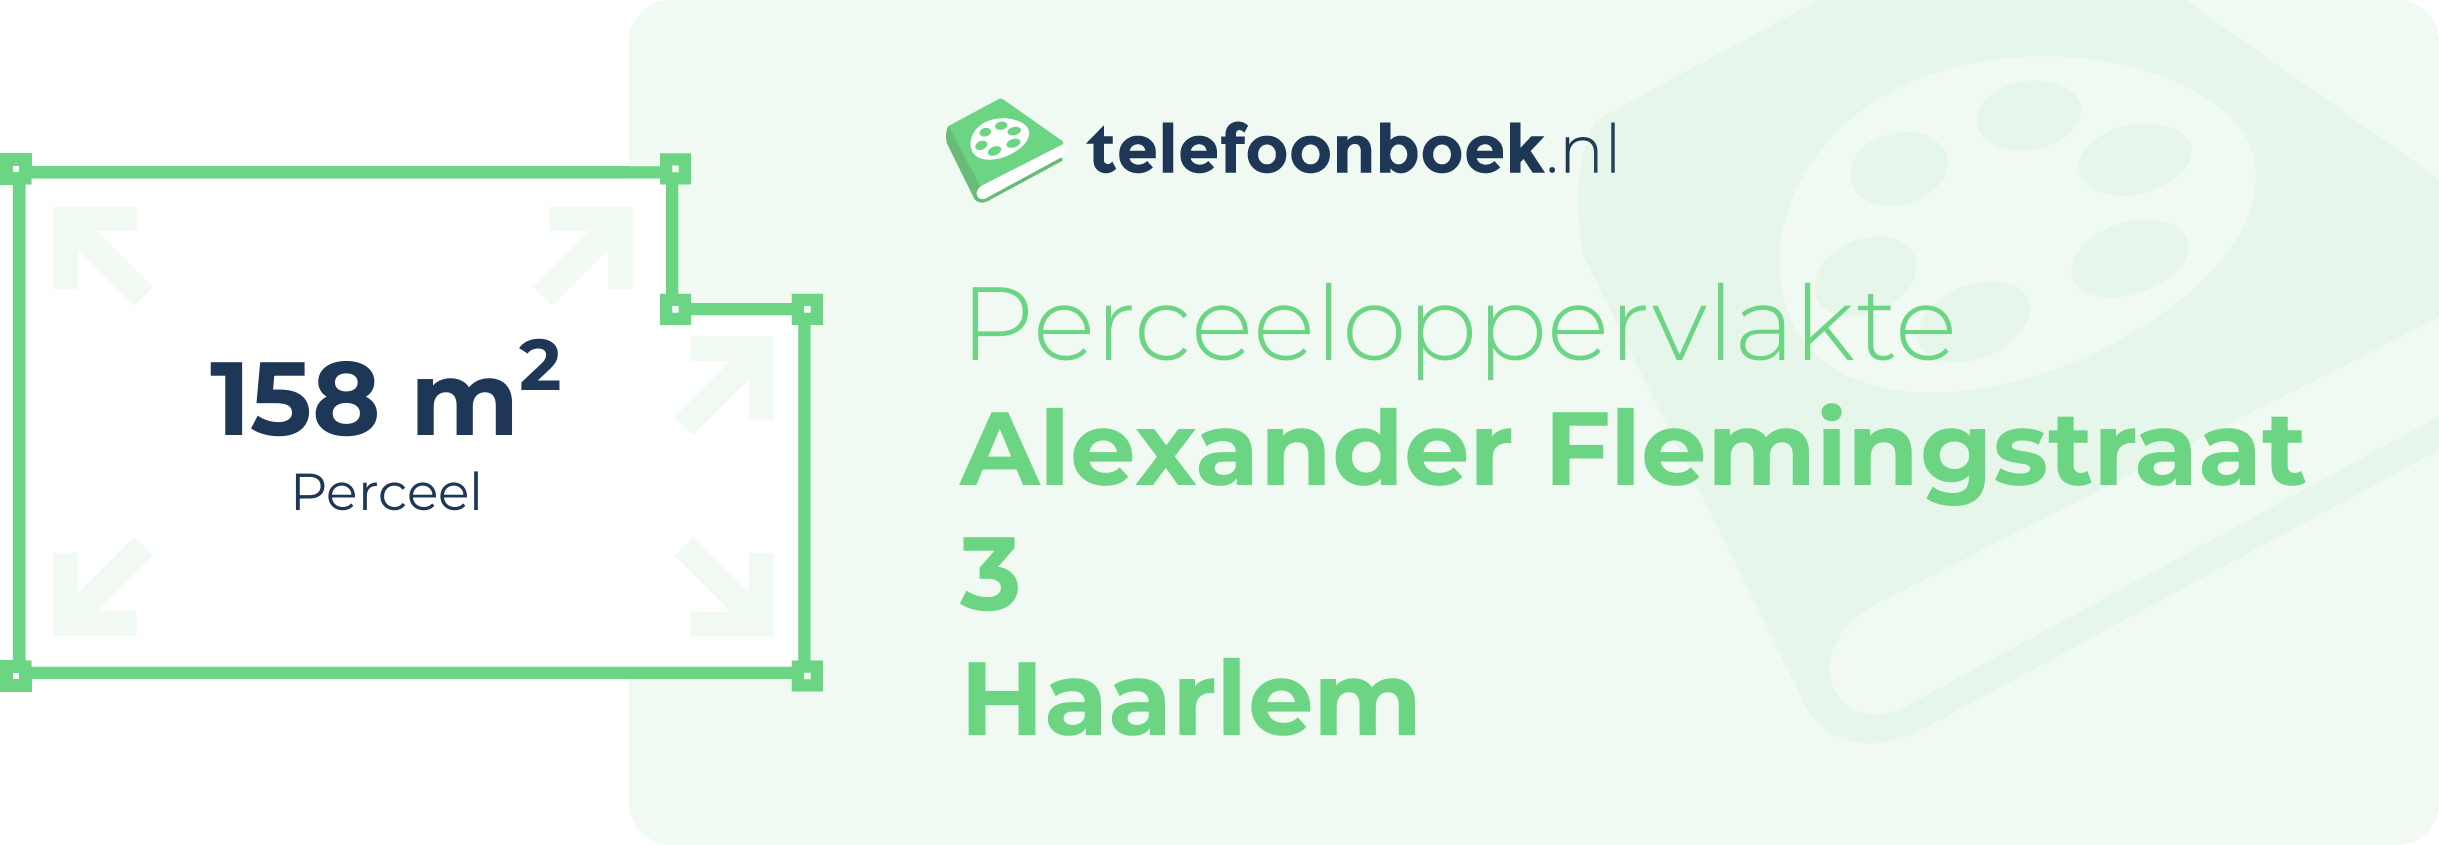 Perceeloppervlakte Alexander Flemingstraat 3 Haarlem